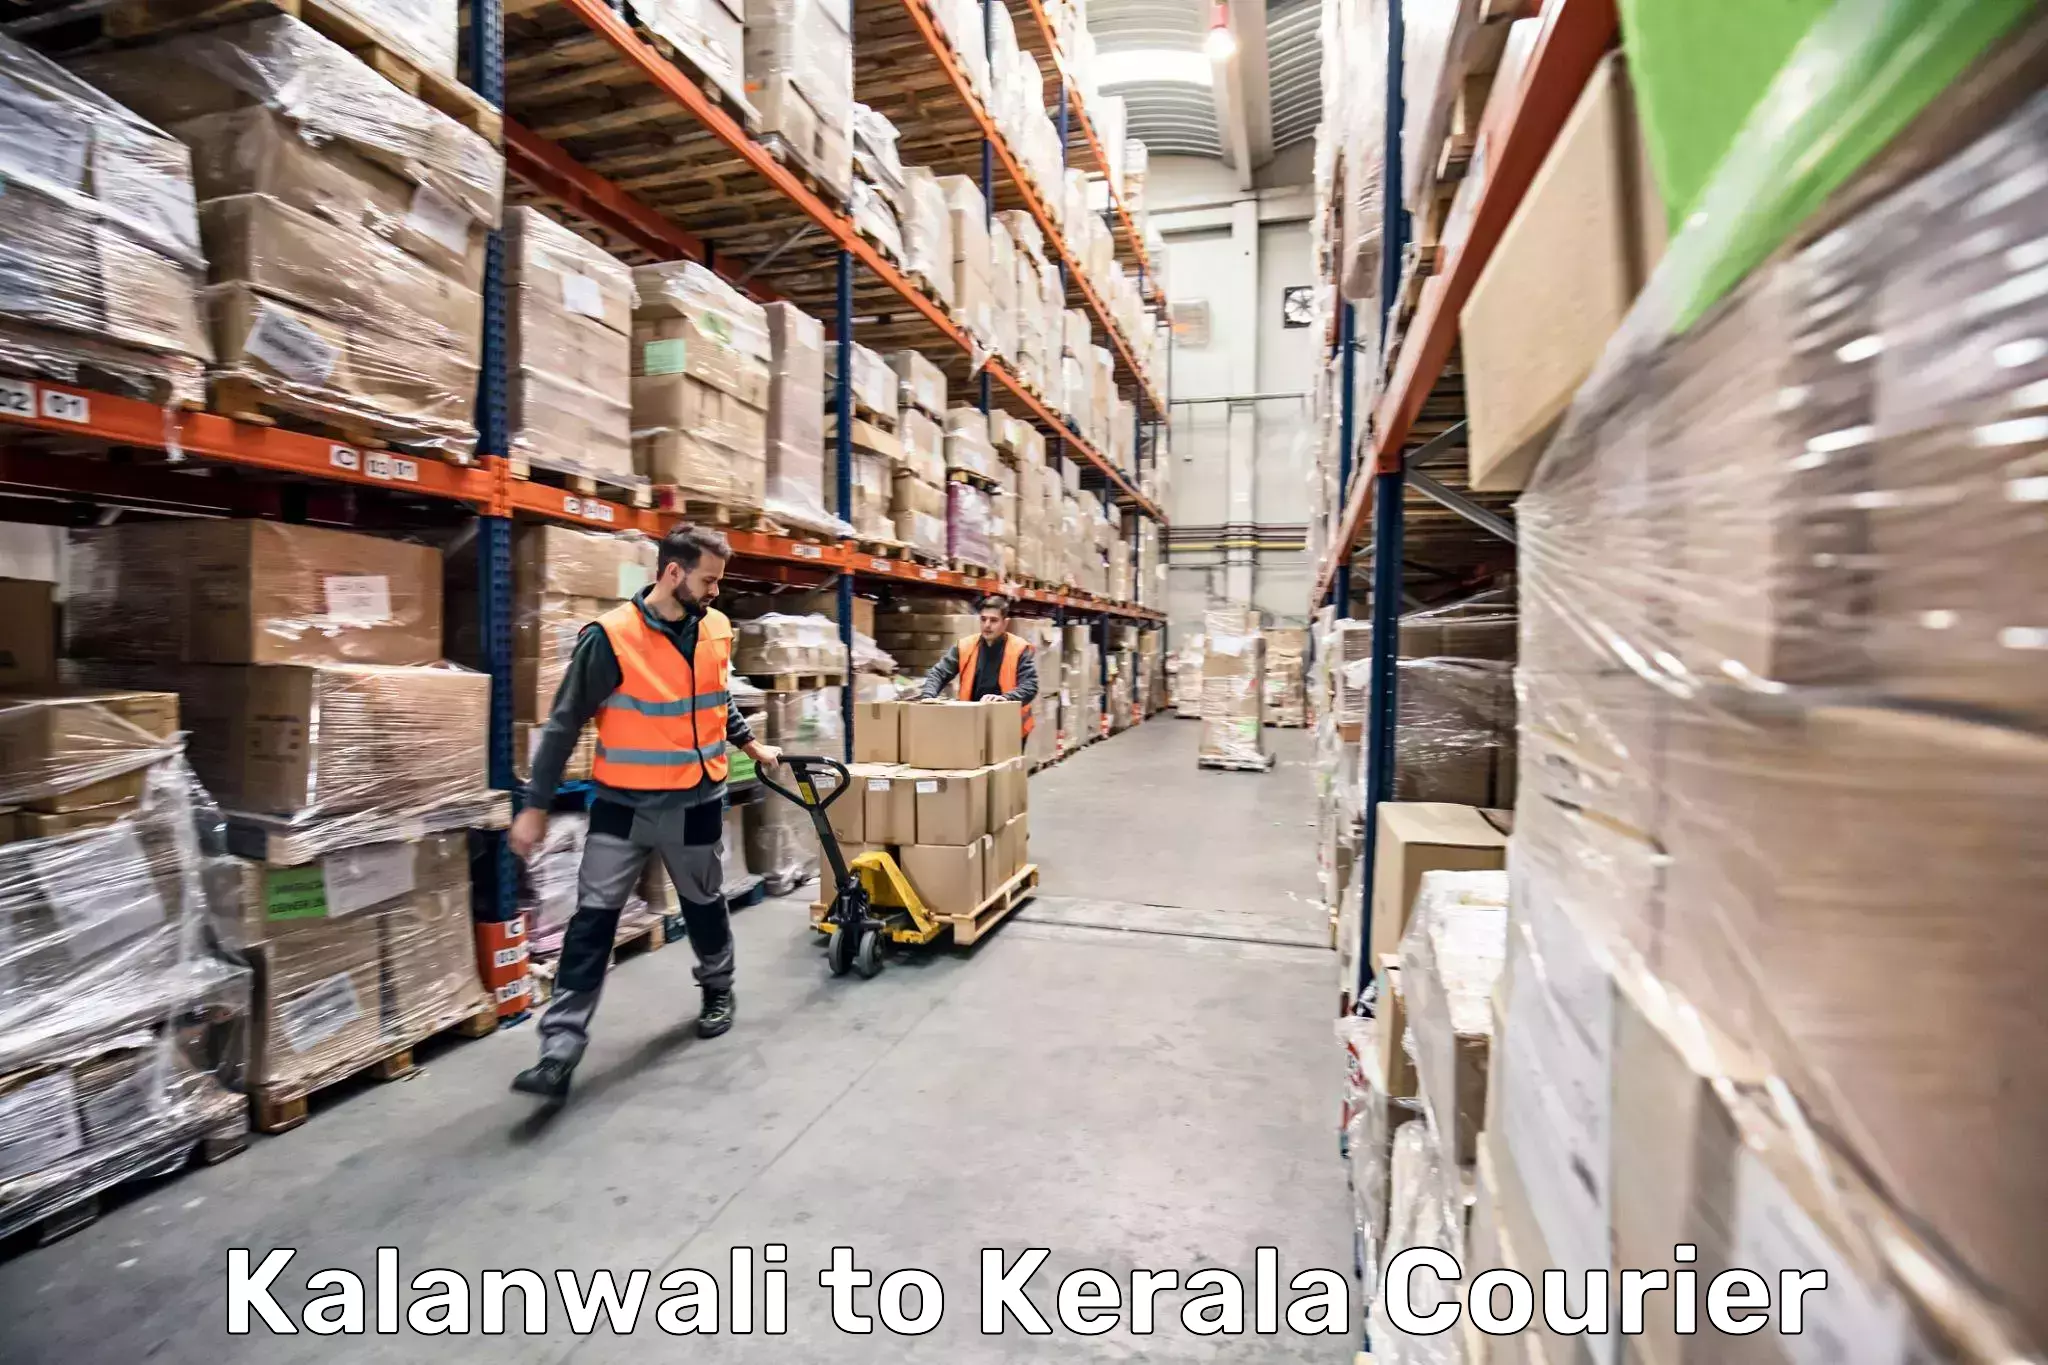 Baggage shipping quotes Kalanwali to Perinthalmanna